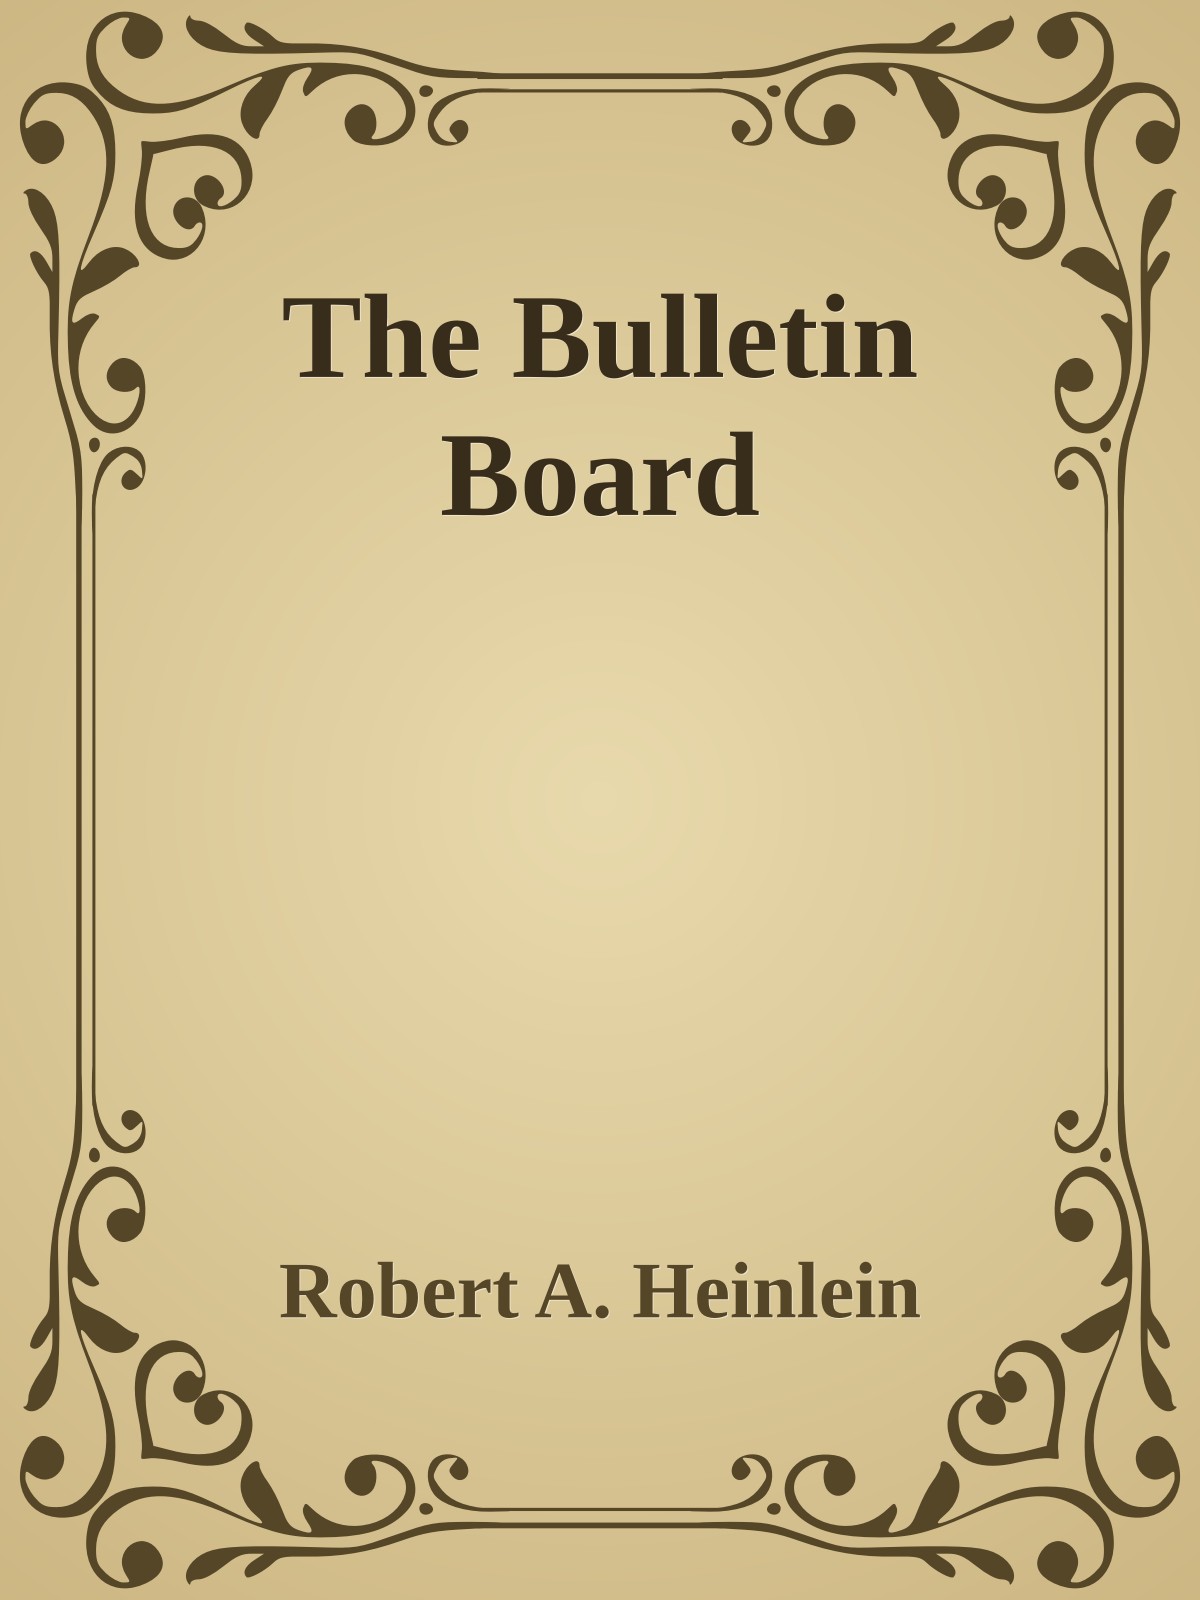 The Bulletin Board